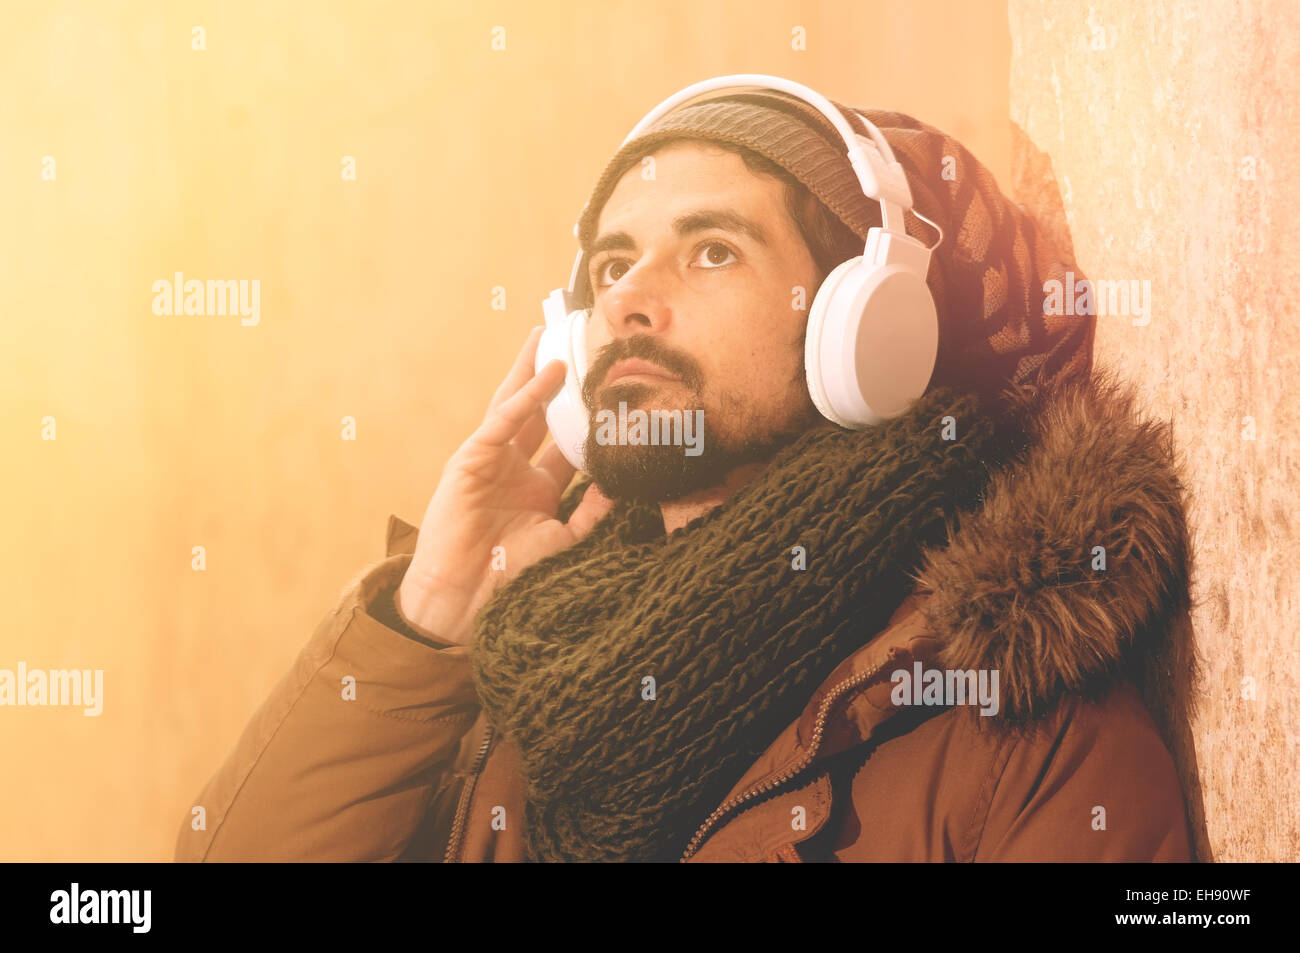 ein junger Mann hört Musik in einem städtischen Bild des modernen Lebens, warmen Tönen Stil getönt Stockfoto